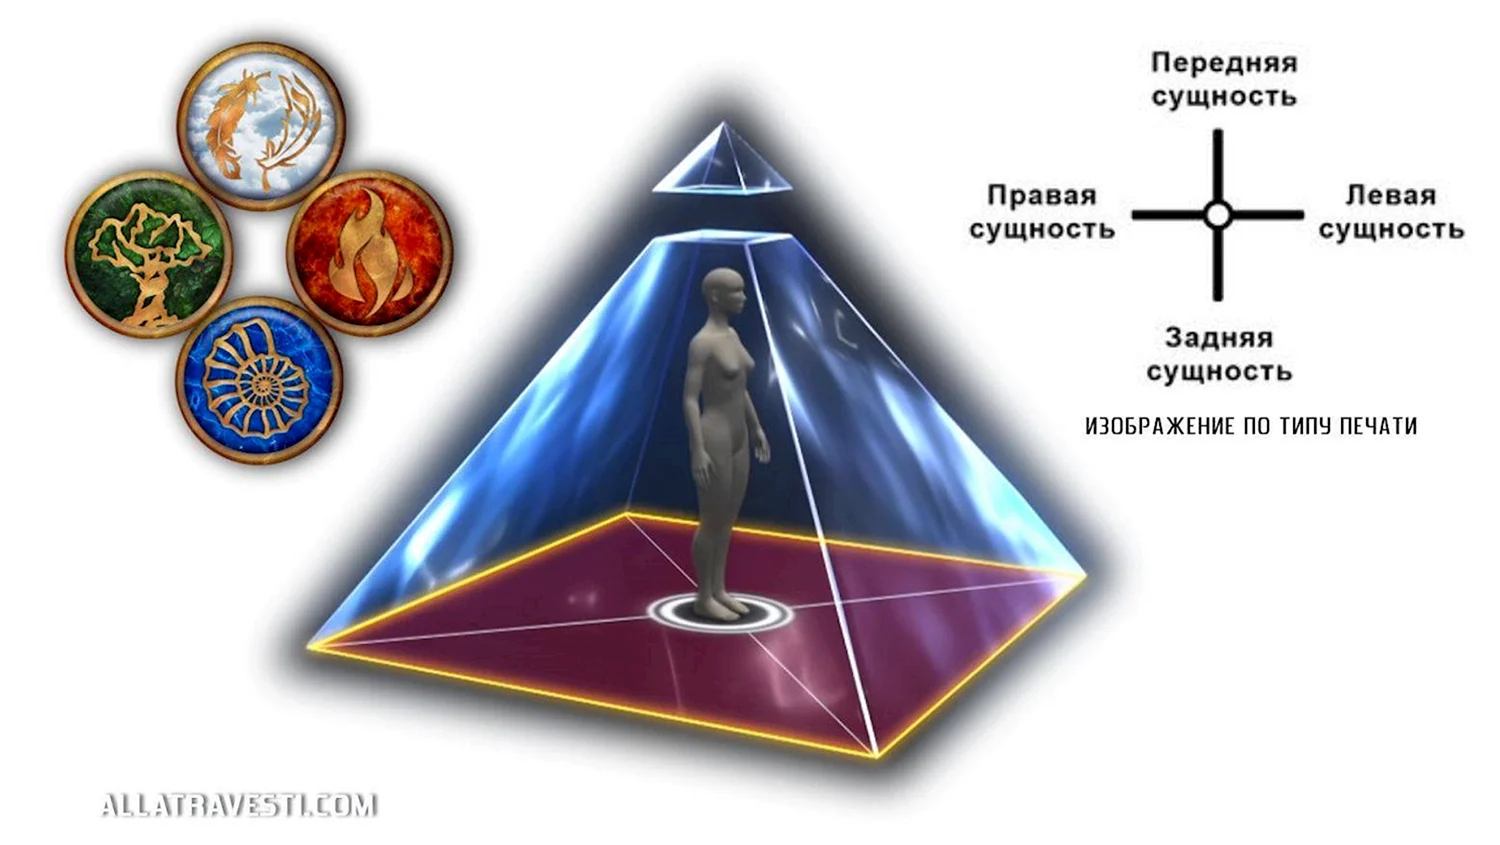 Пирамидальная структура человека